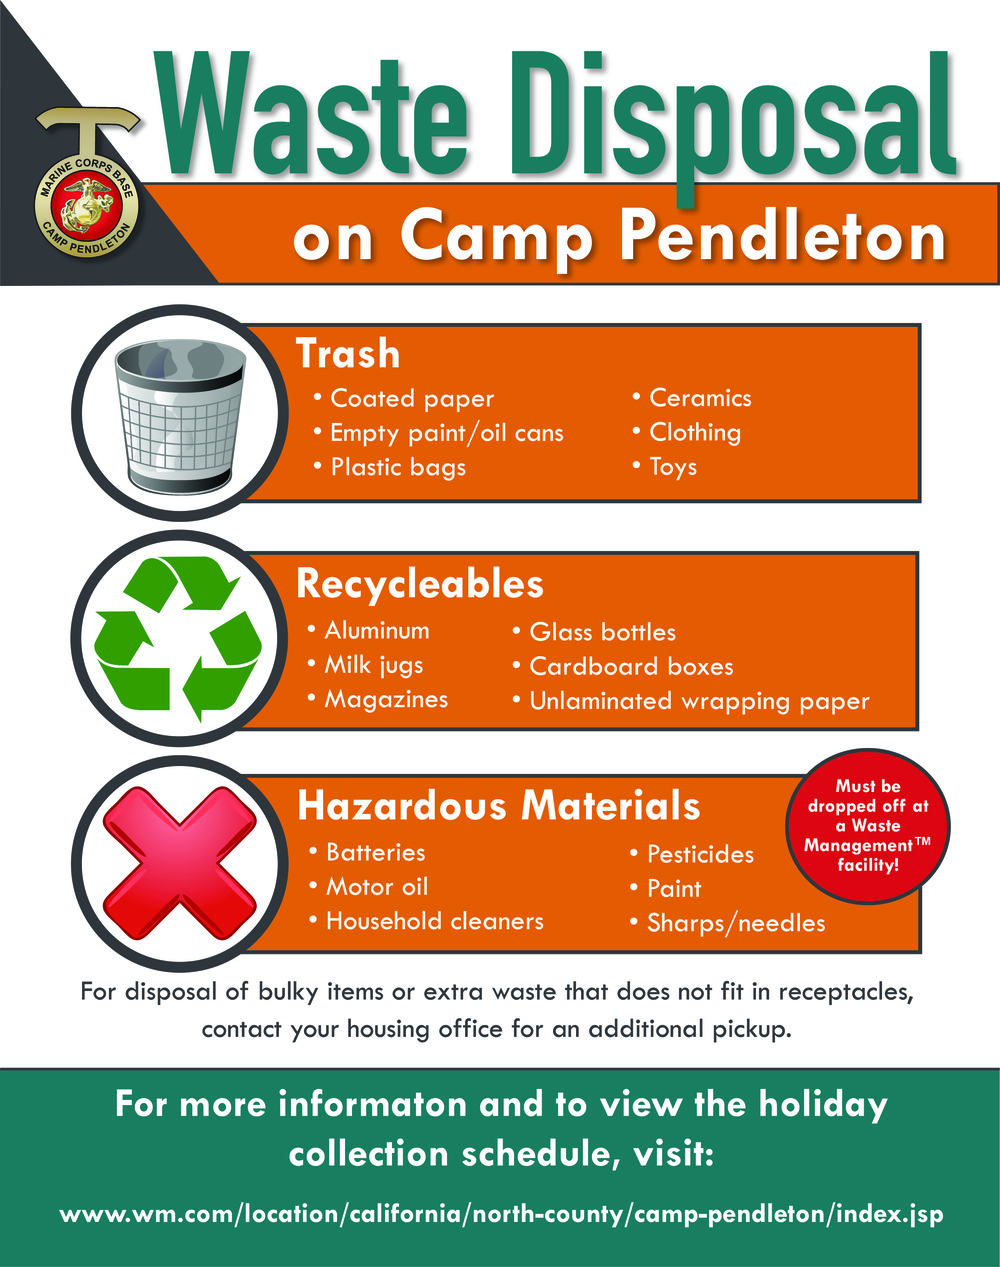 Waste Disposal on Camp Pendleton